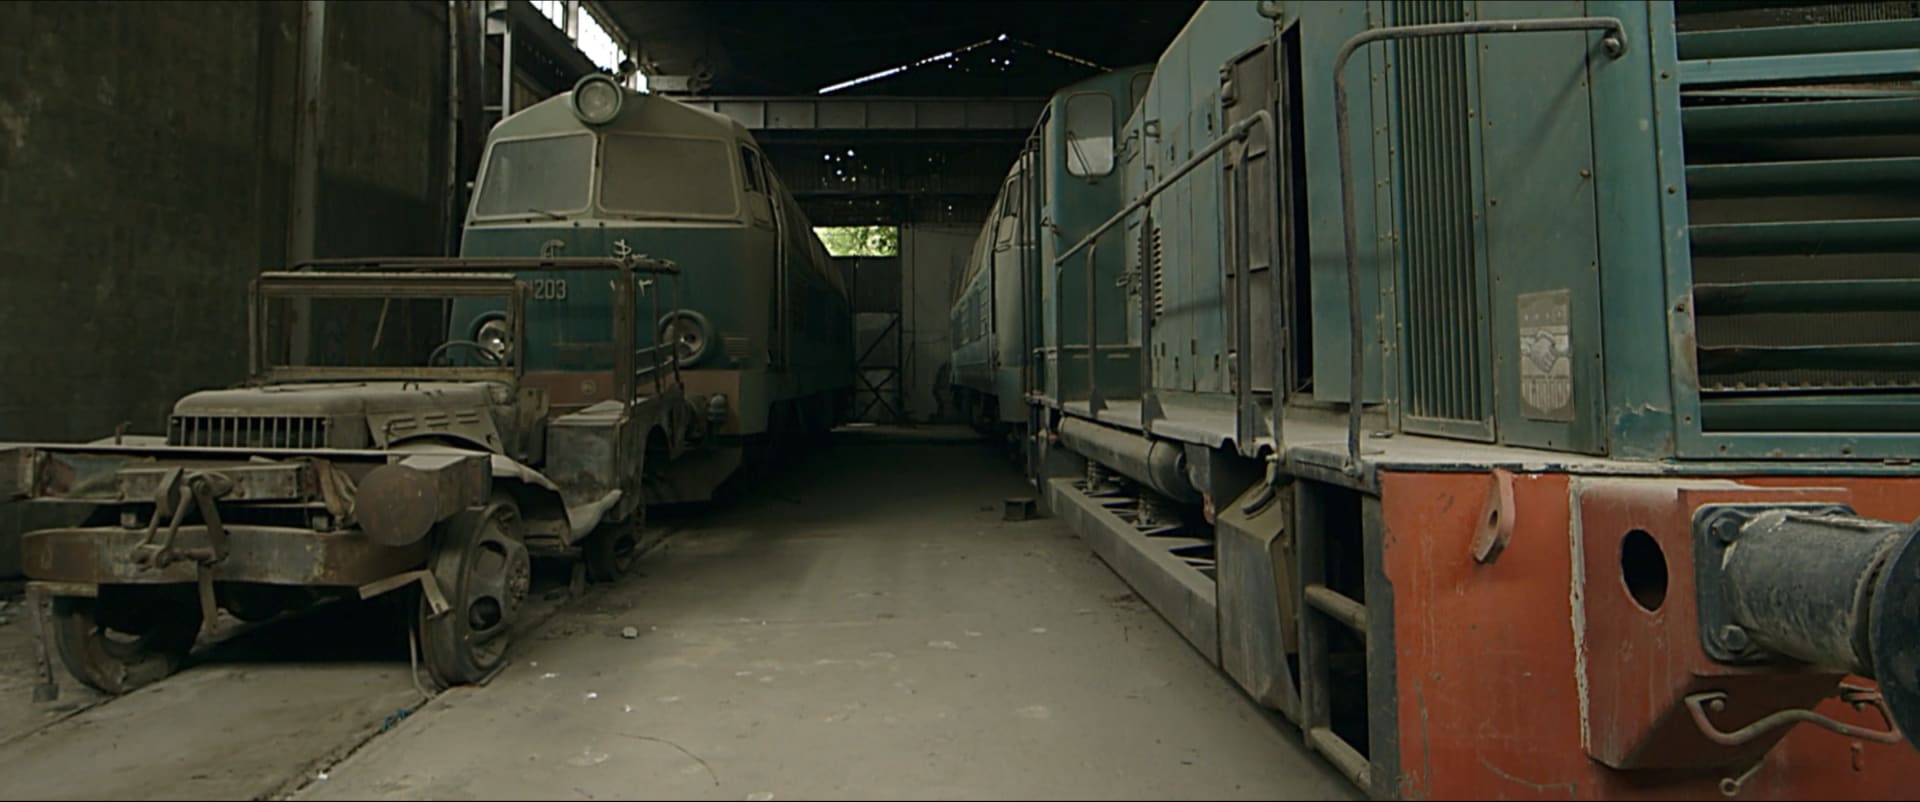 صور من فيلم "بيروت المحطة الأخيرة"